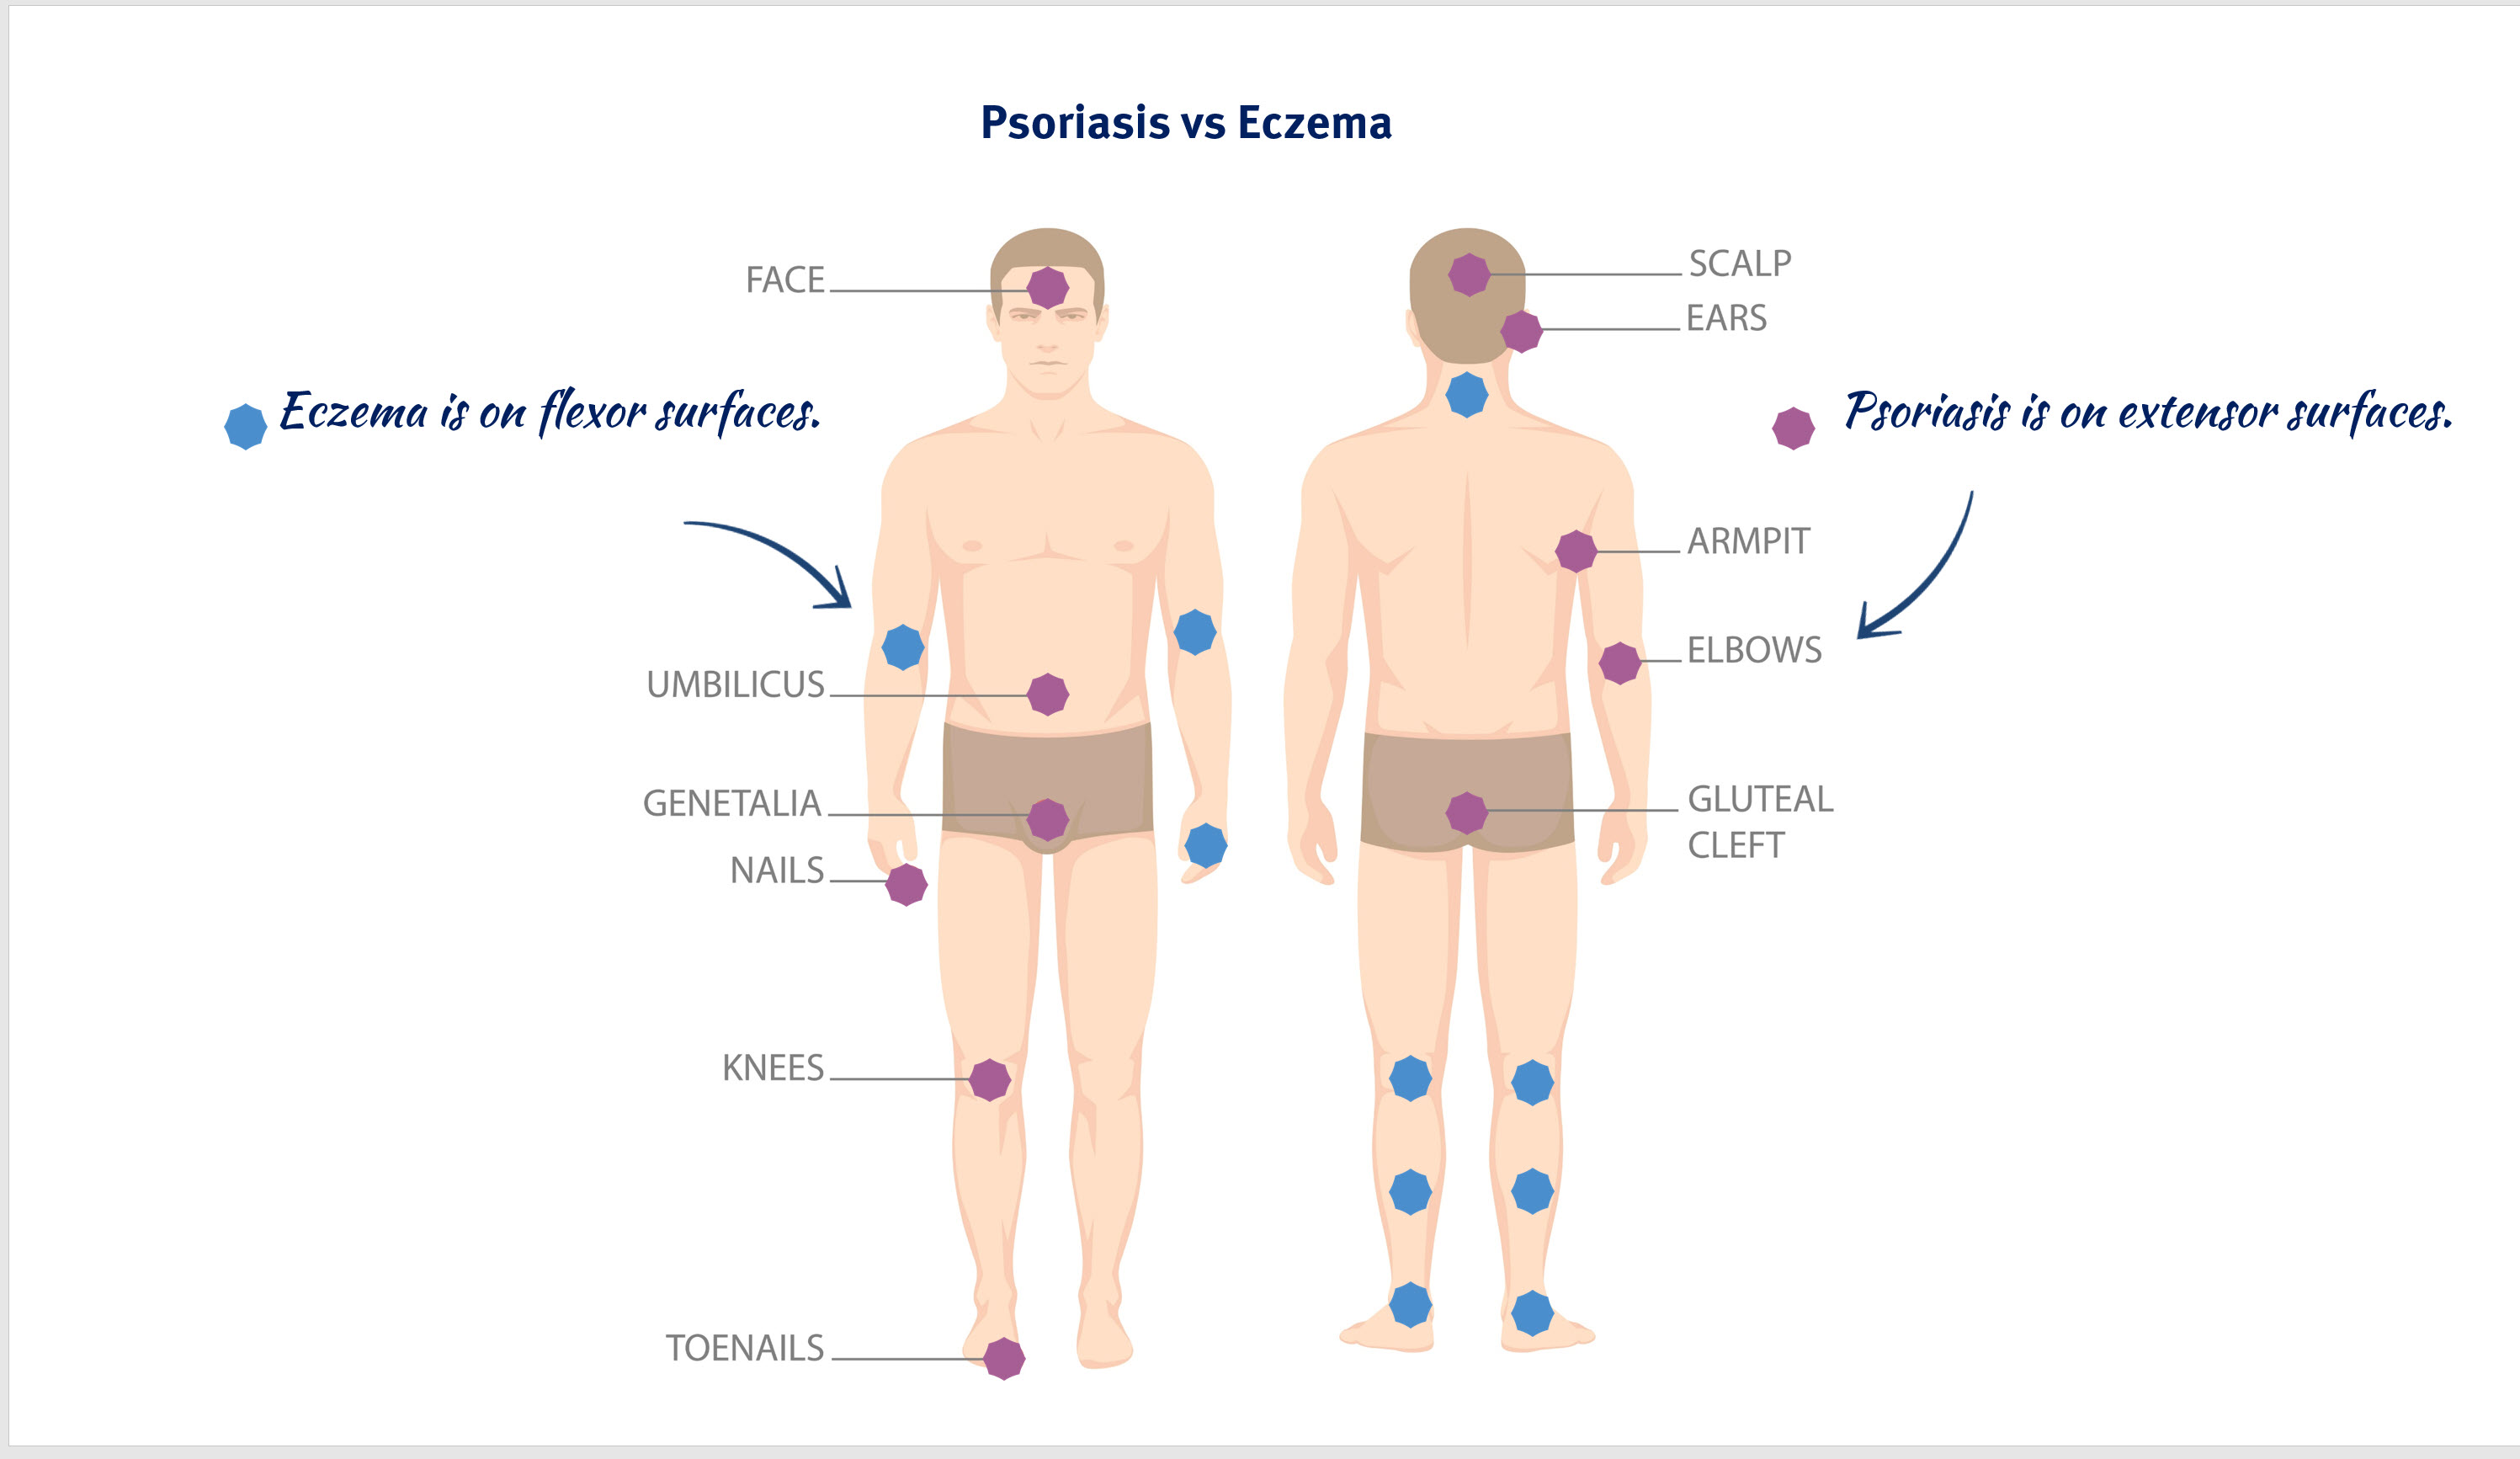 psoriasis vs eczema locations on body